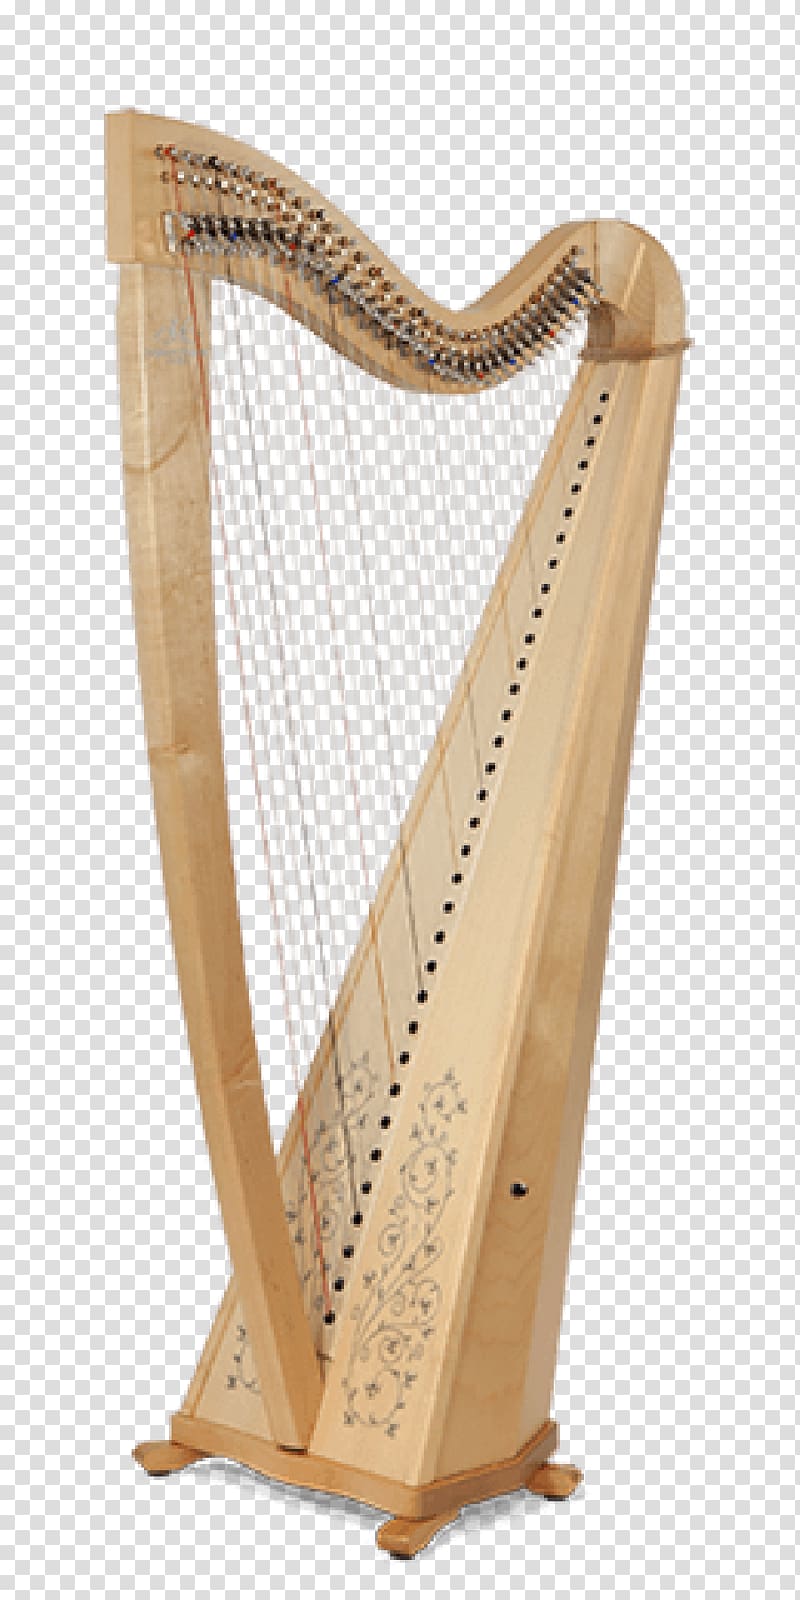 Camac Harps Celtic harp String Music School De Limours, harp transparent background PNG clipart